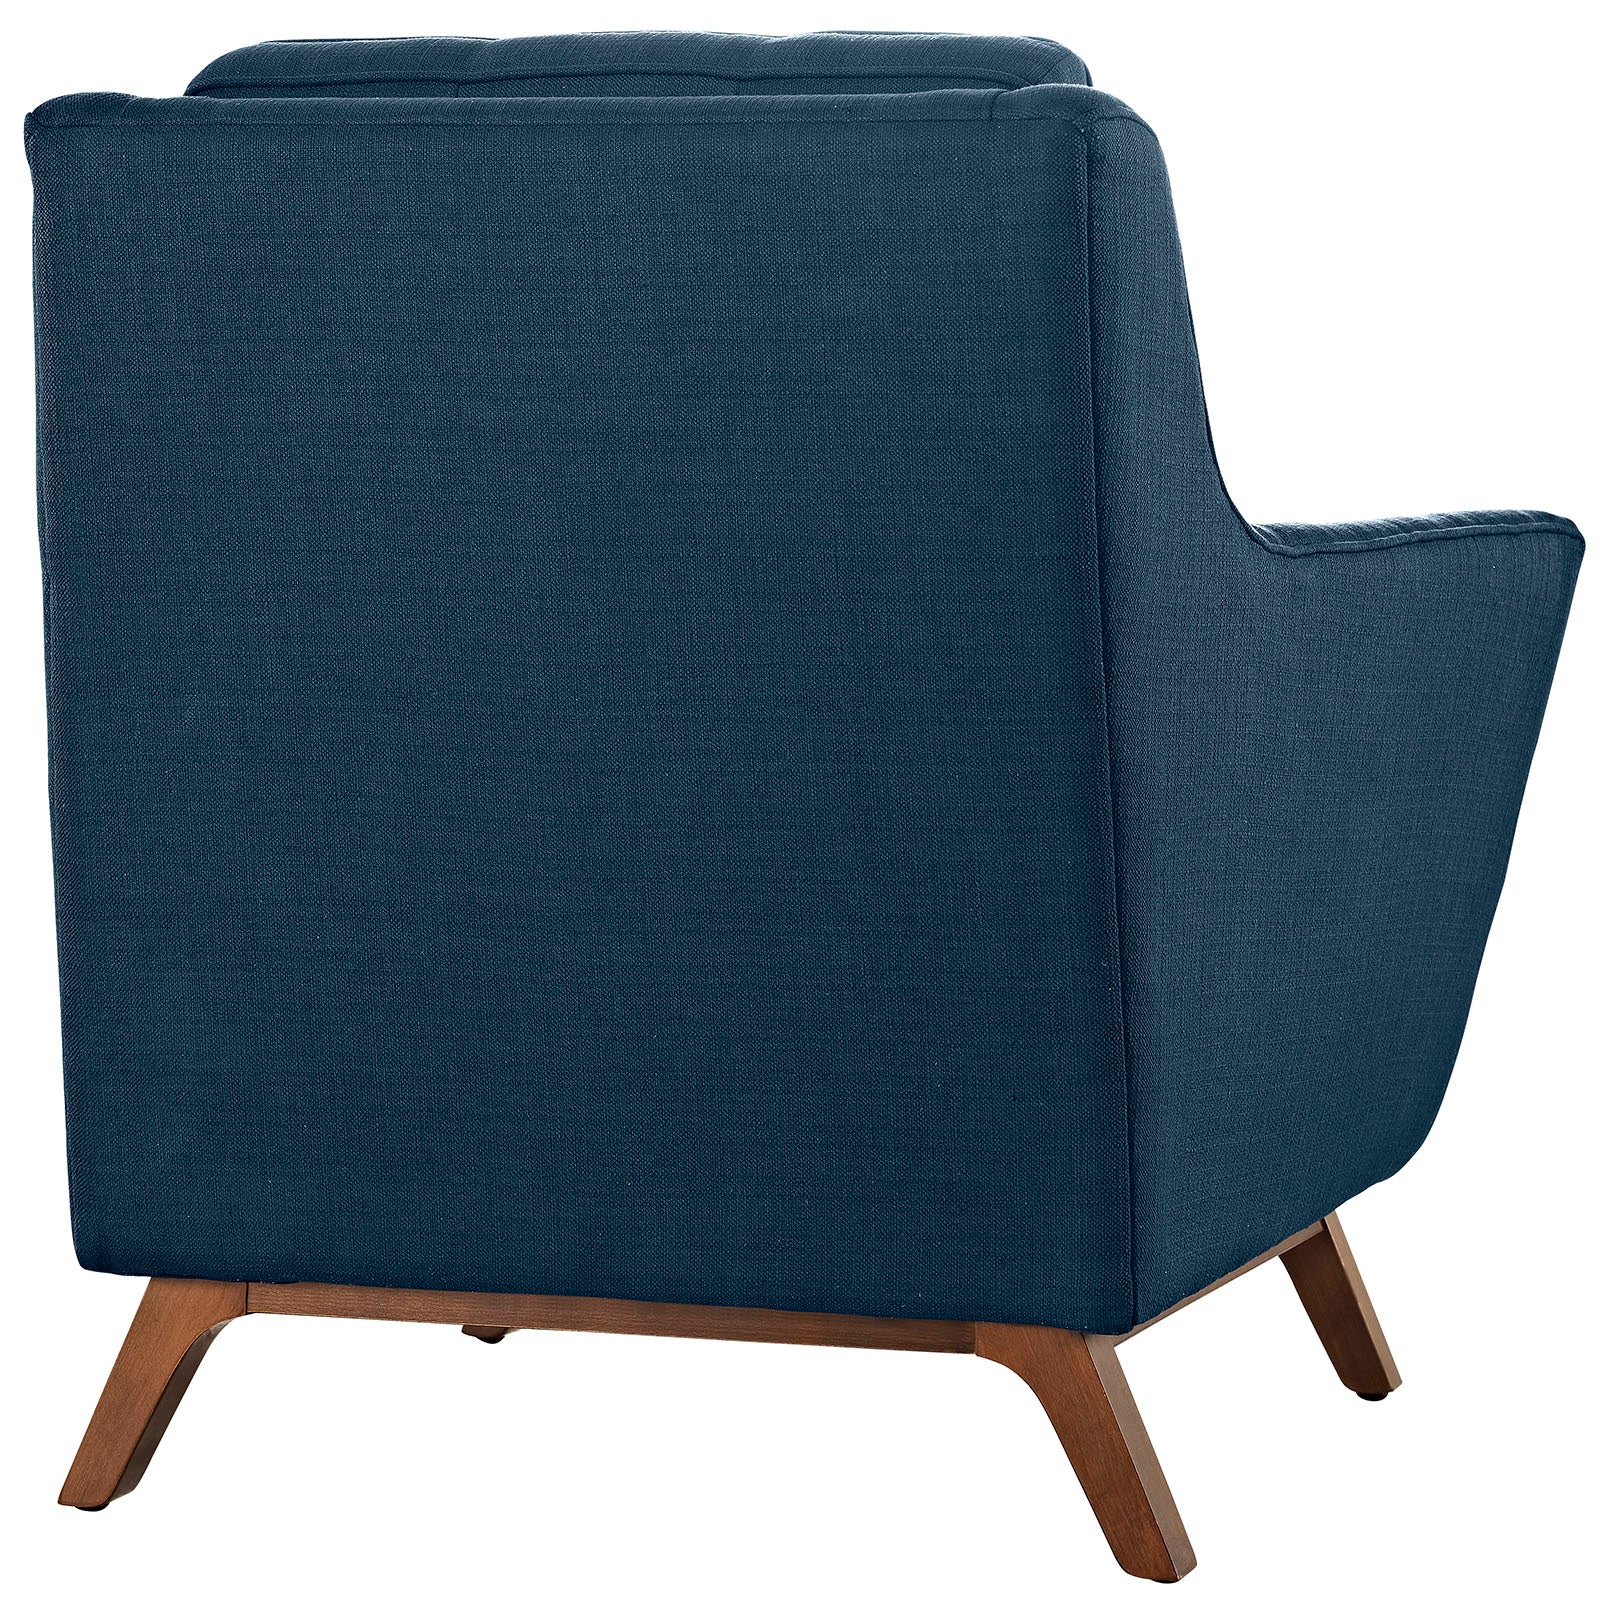 Modway Living Room Sets - Beguile-2-Piece-Upholstered-Fabric-Living-Room-Set-Azure